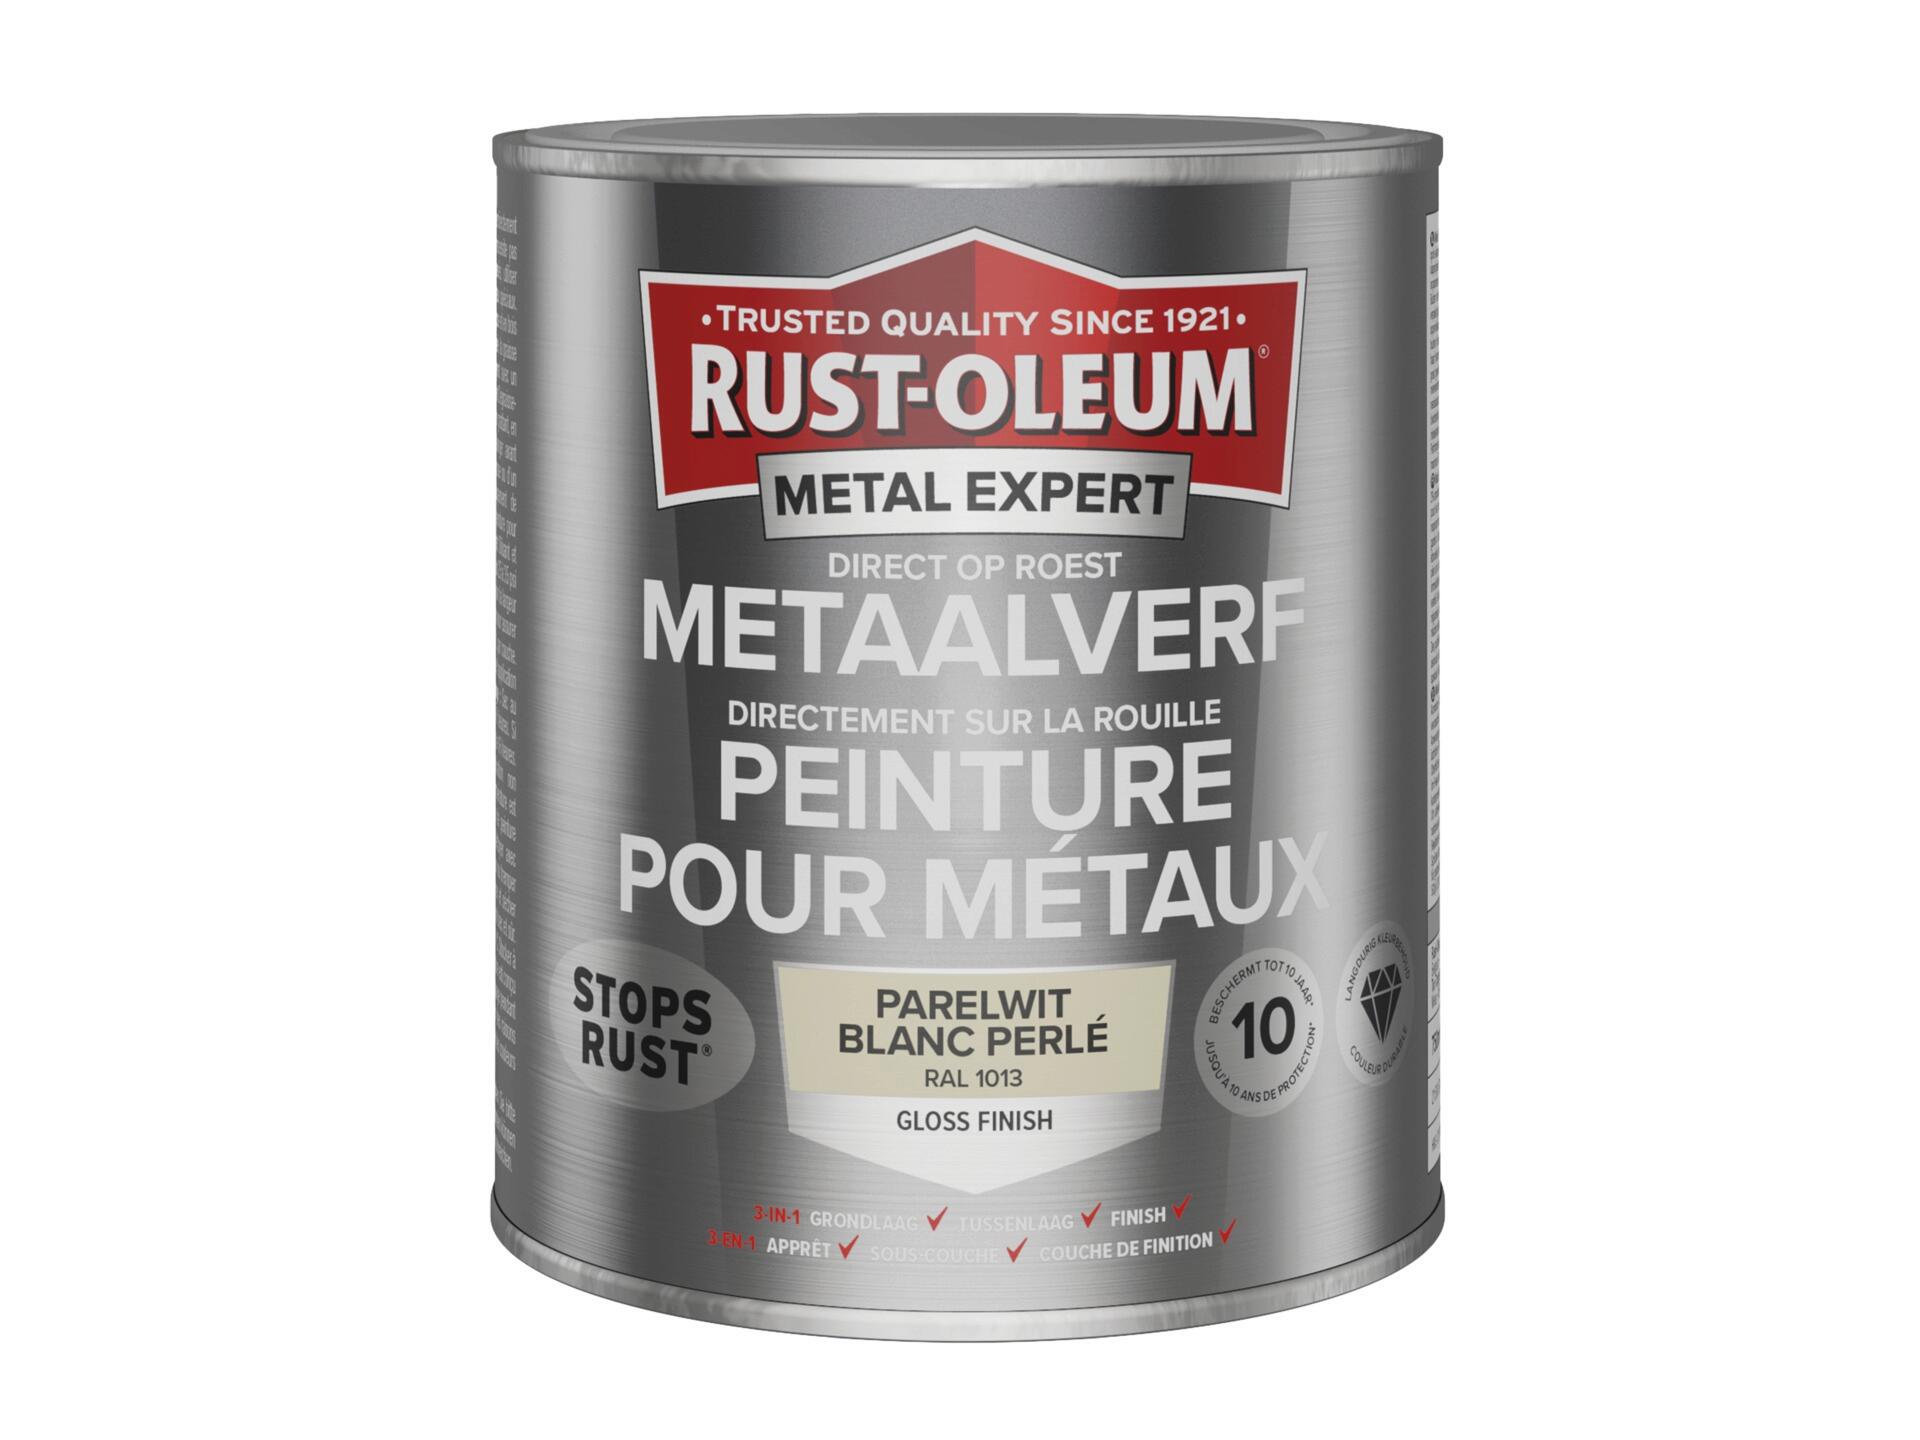 Rust-oleum Metal Expert peinture pour métaux brillant 750ml blanc perlé